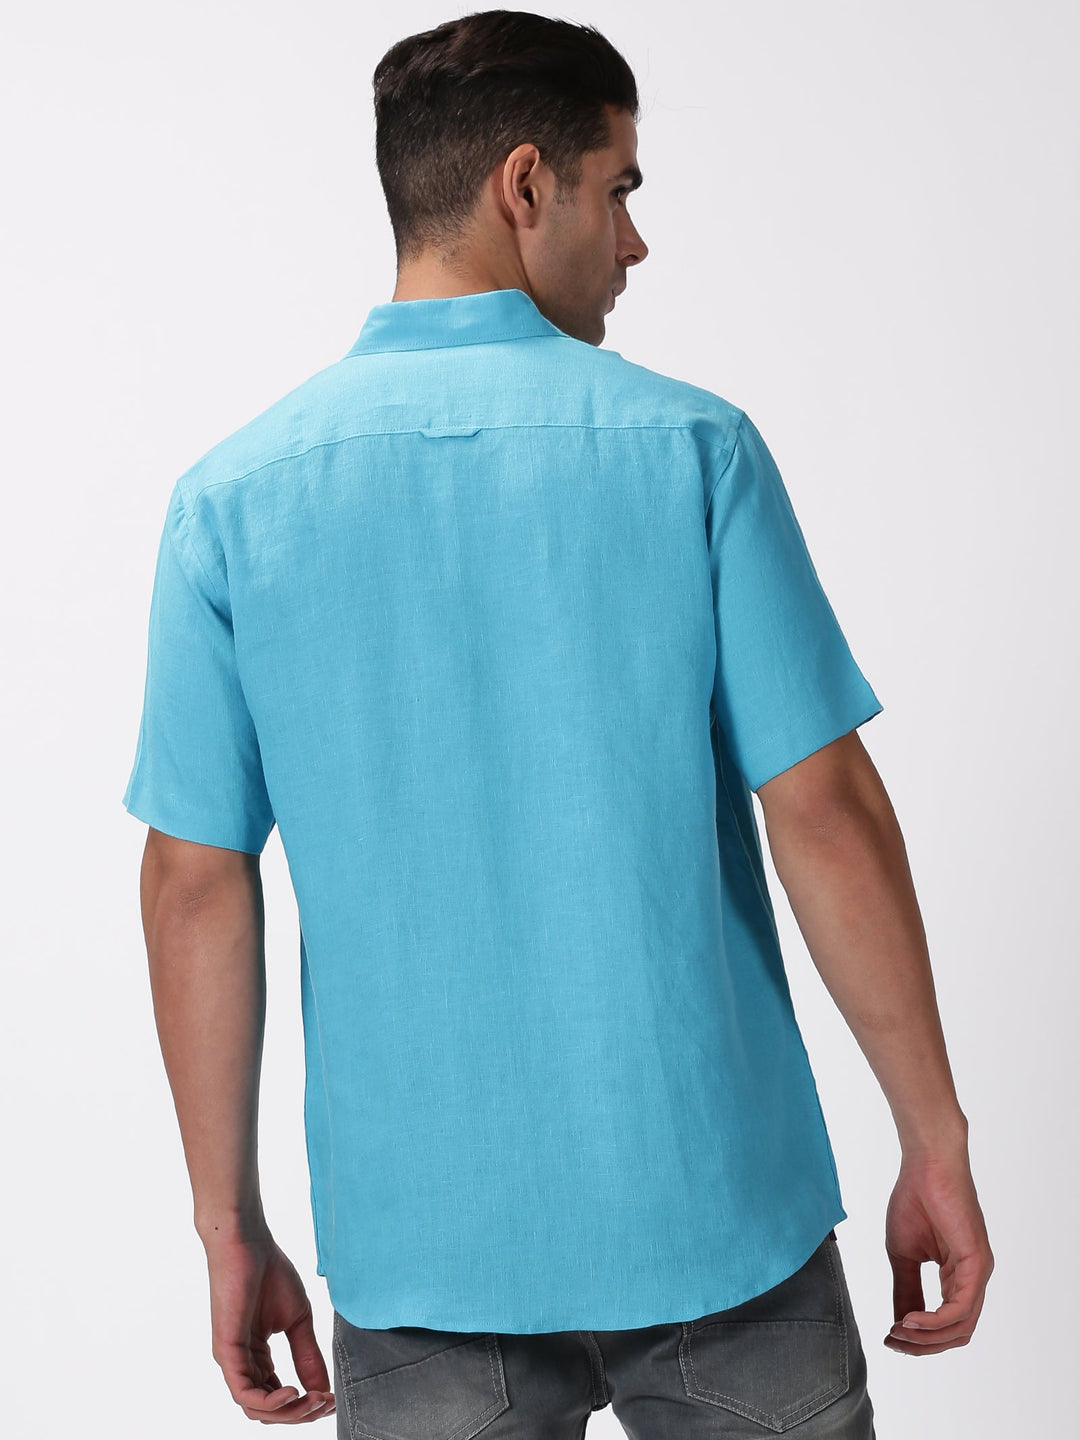 Kian - Pure Linen Regular Collar Half Sleeve Shirt - Aqua Blue | Rescue